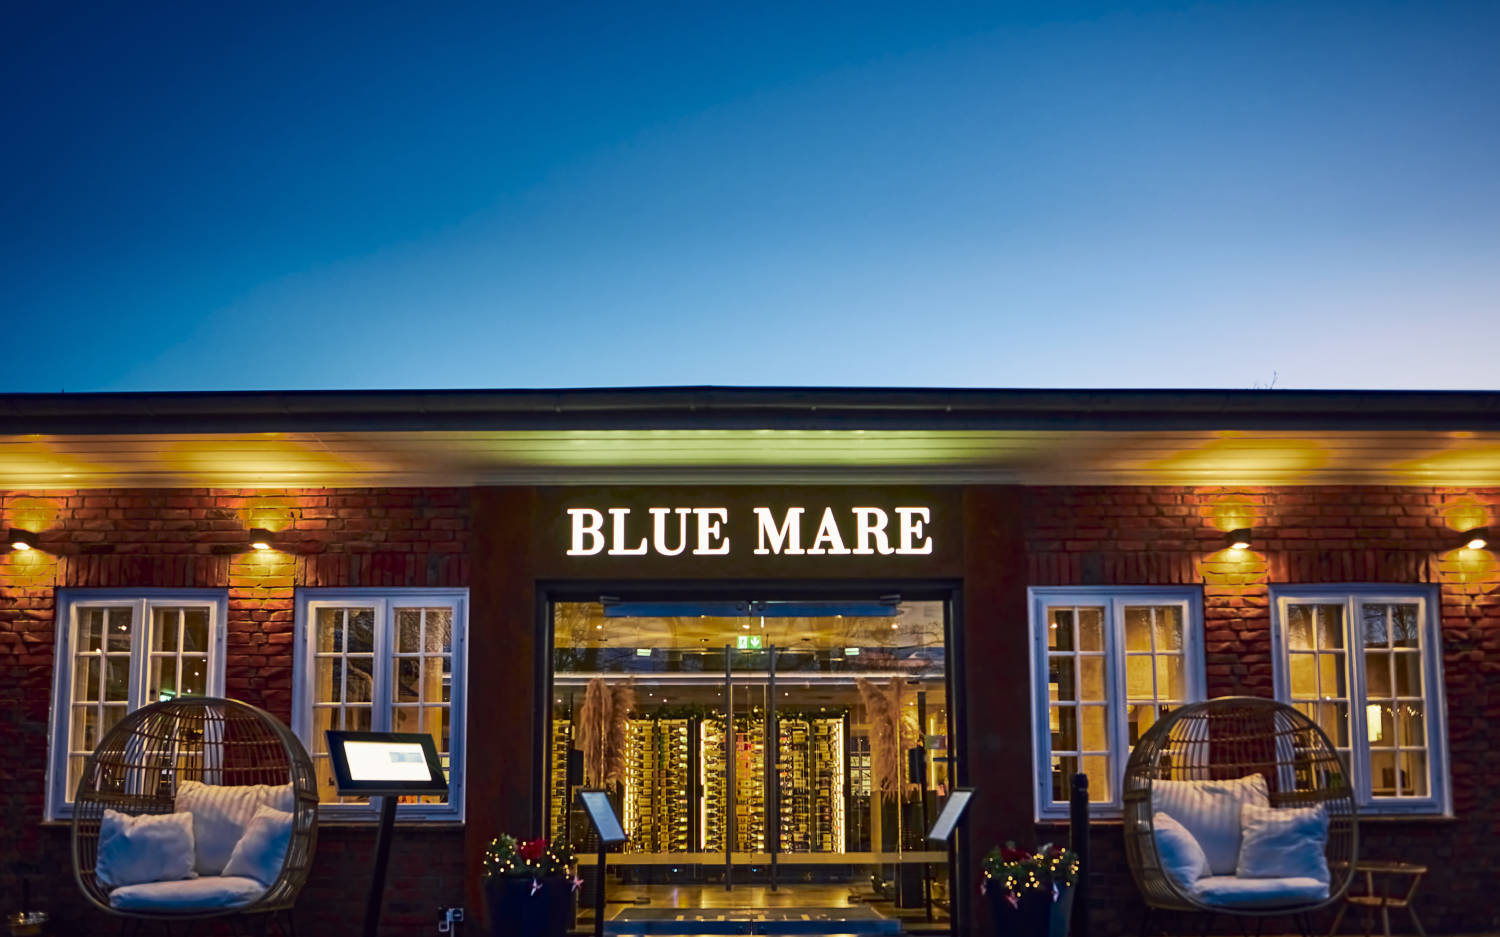 Außenansicht des Blue Mare in Langenhorn / ©Marc Sill